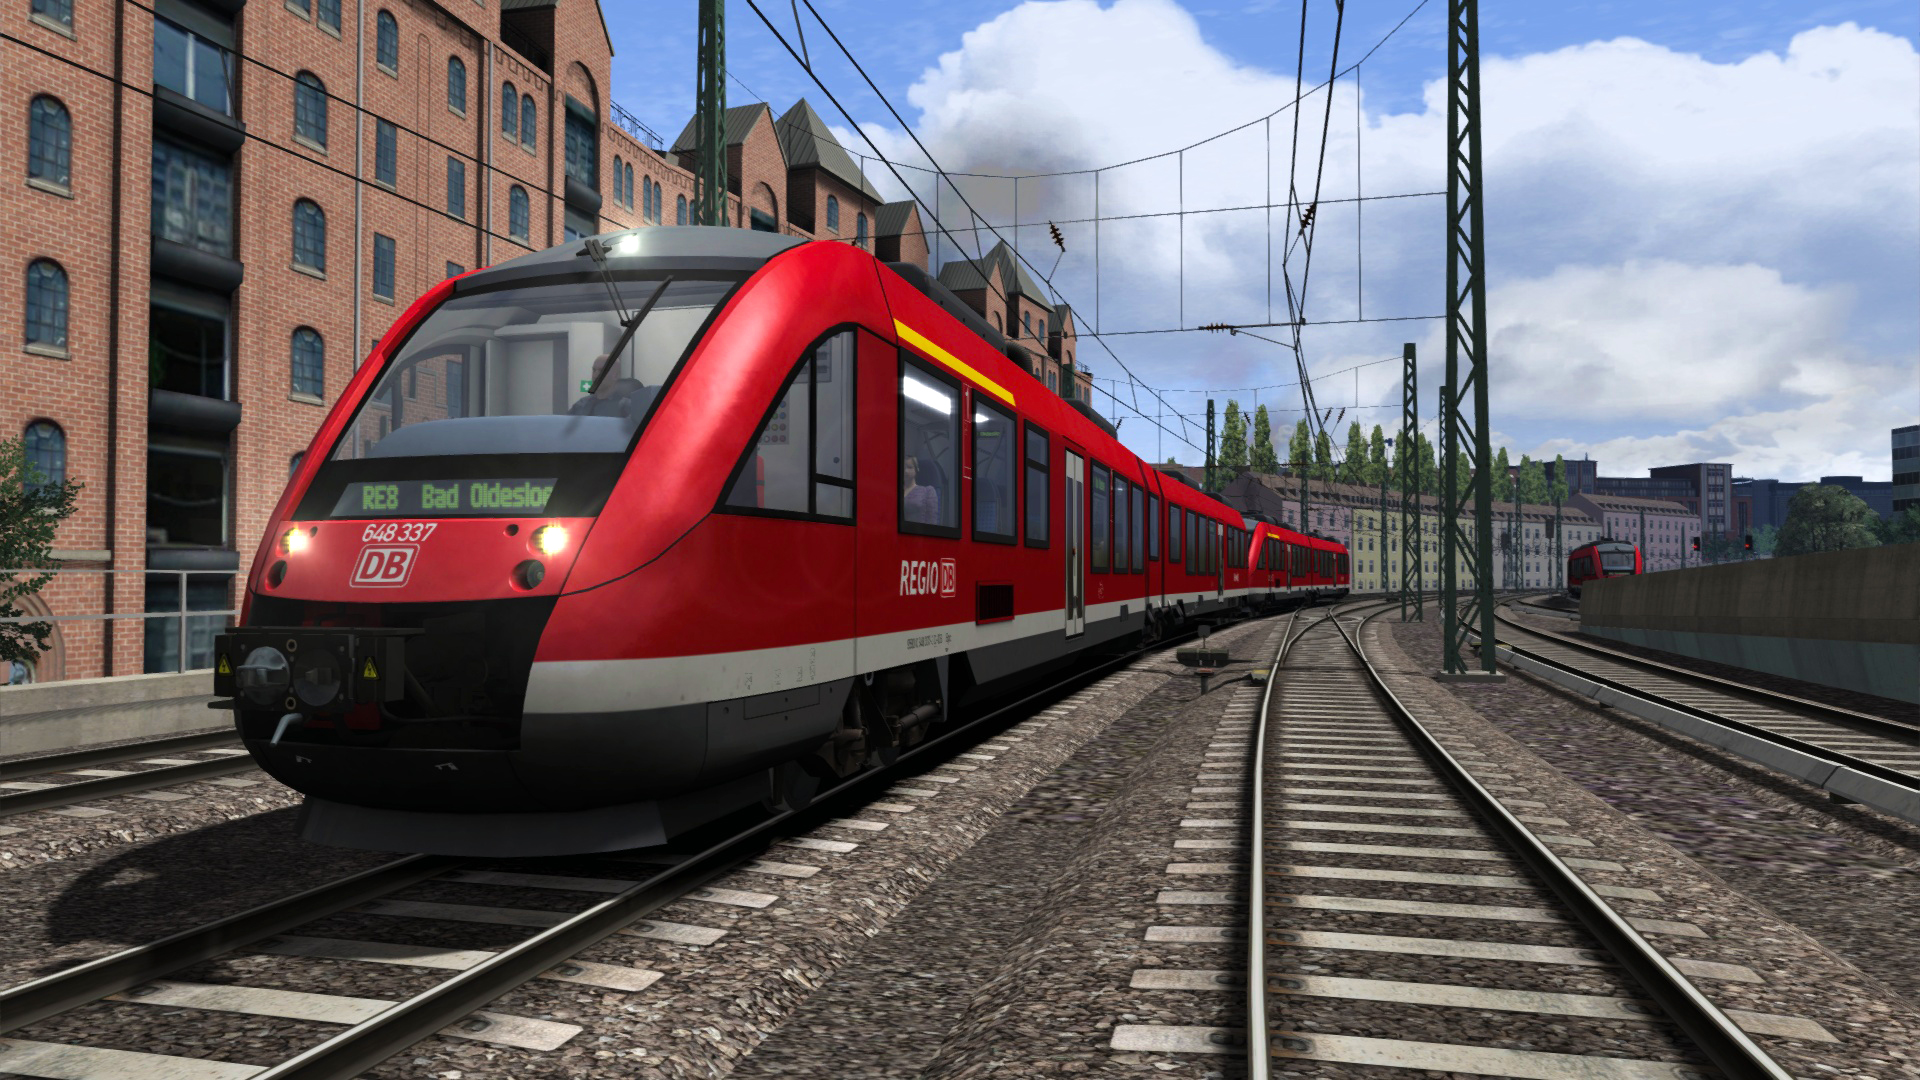 Train Simulator Classic - DB BR 648 Loco Add-On DLC Steam CD Key 0.43 usd